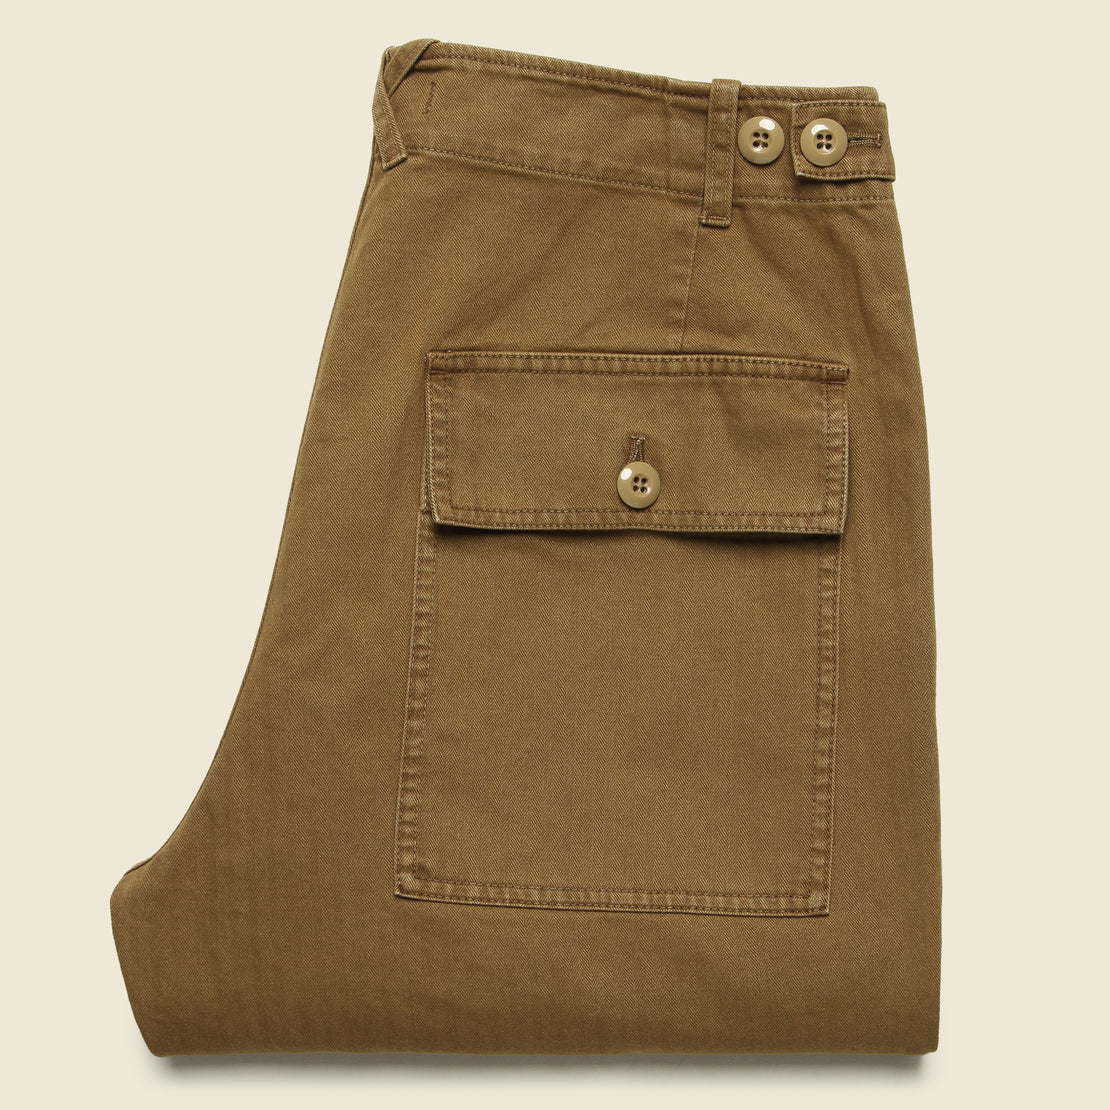 Cotton Herringbone Field Pant - Dark Khaki - Alex Mill - STAG Provisions - Pants - Twill